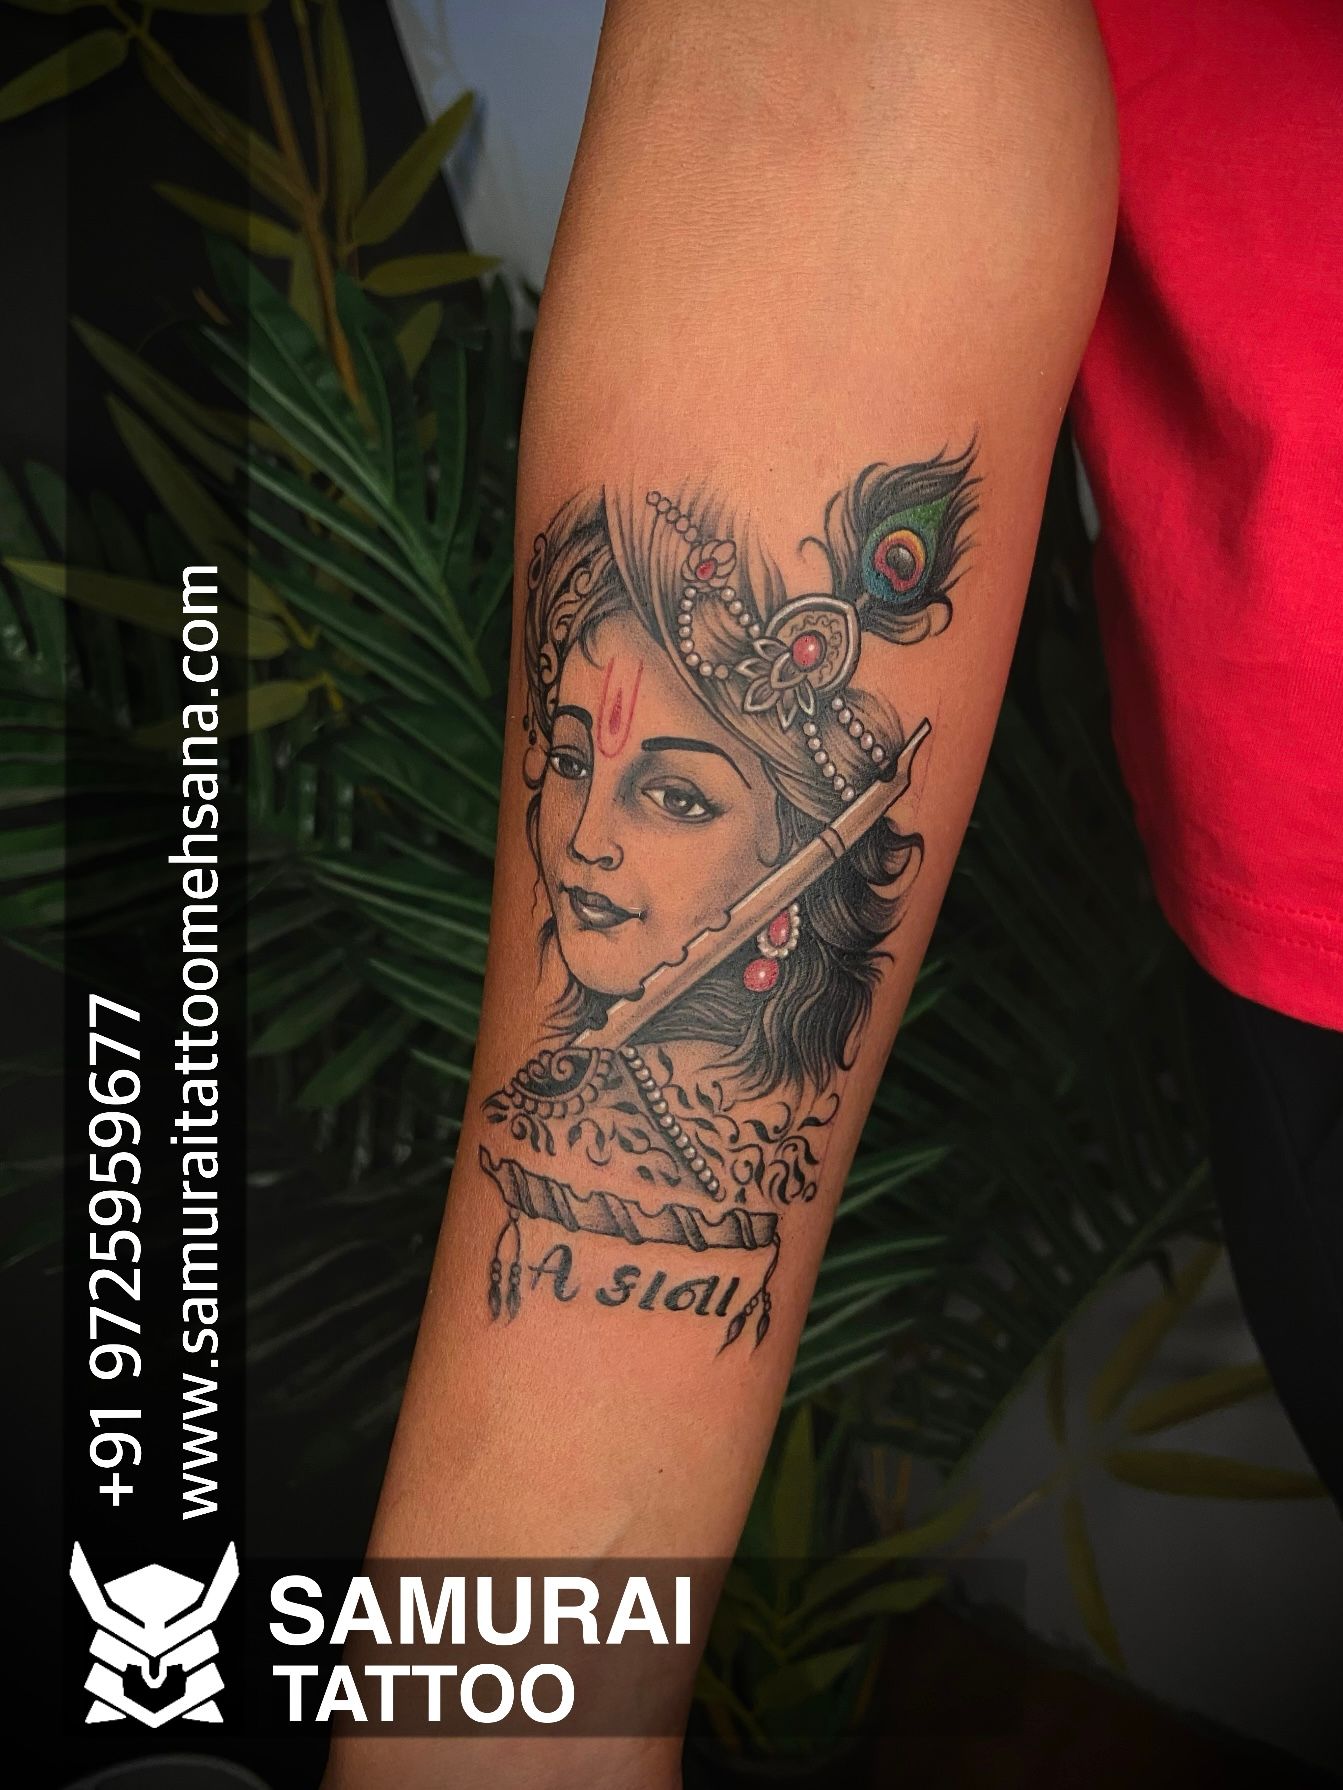 Tattoo Sutra Bangalore on Instagram krishnatattoo throwback  tattoosutra  Wrist tattoos for guys Krishna tattoo Band tattoo designs